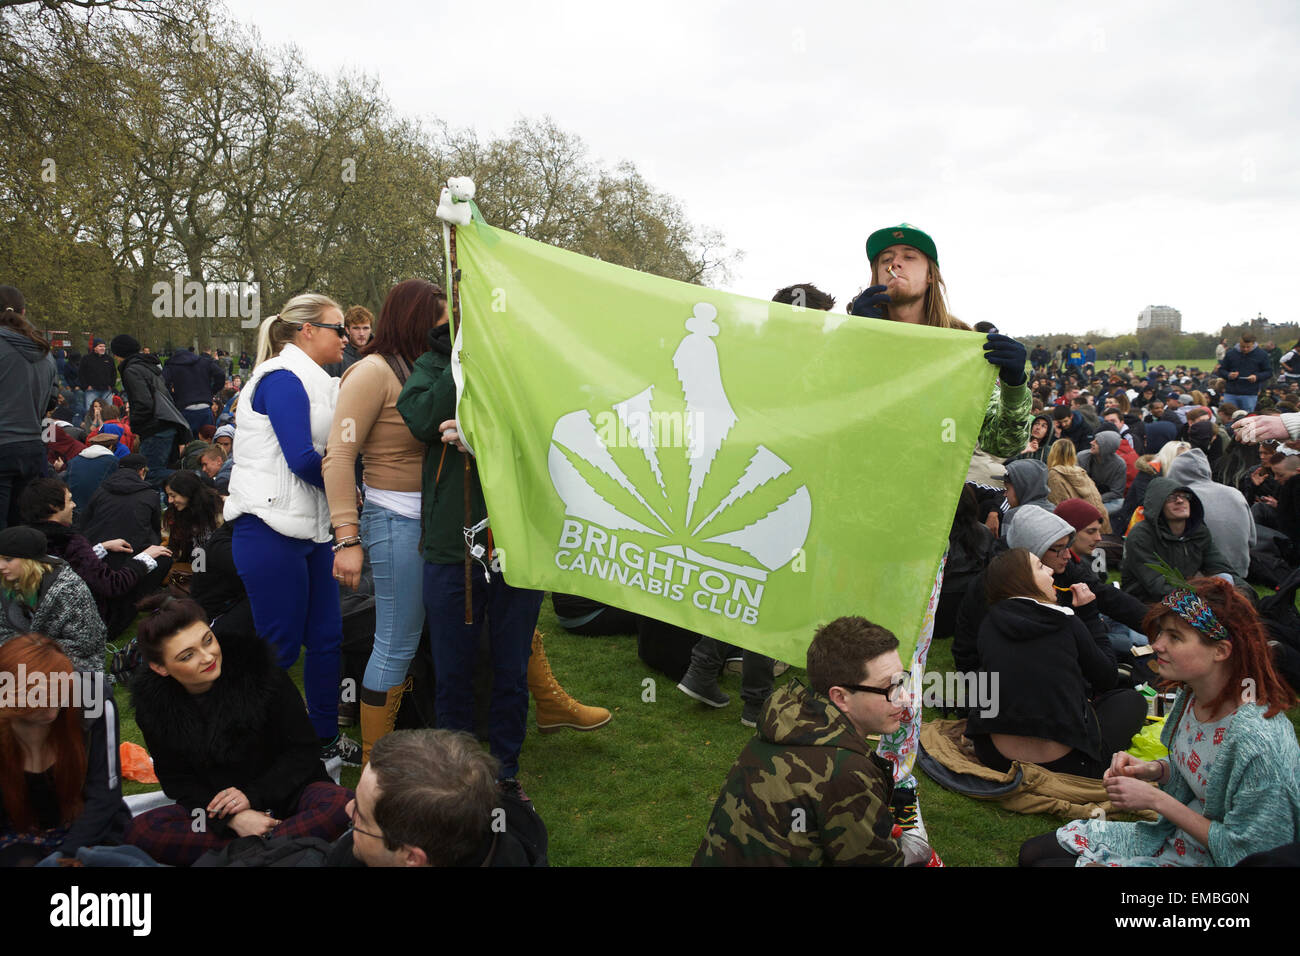 Hyde Park, London, UK, 19 avril 2015. Un festival pour la campagne pro cannabis La légalisation de la marijuana. Cet événement est organisé chaque année attire des centaines de personnes, où les participants ont ouvertement fumer du cannabis. Le terme '420' est devenu universellement connu comme le mot de code pour le cannabis. Rallye de cannabis. Les partisans du cannabis. Banque D'Images